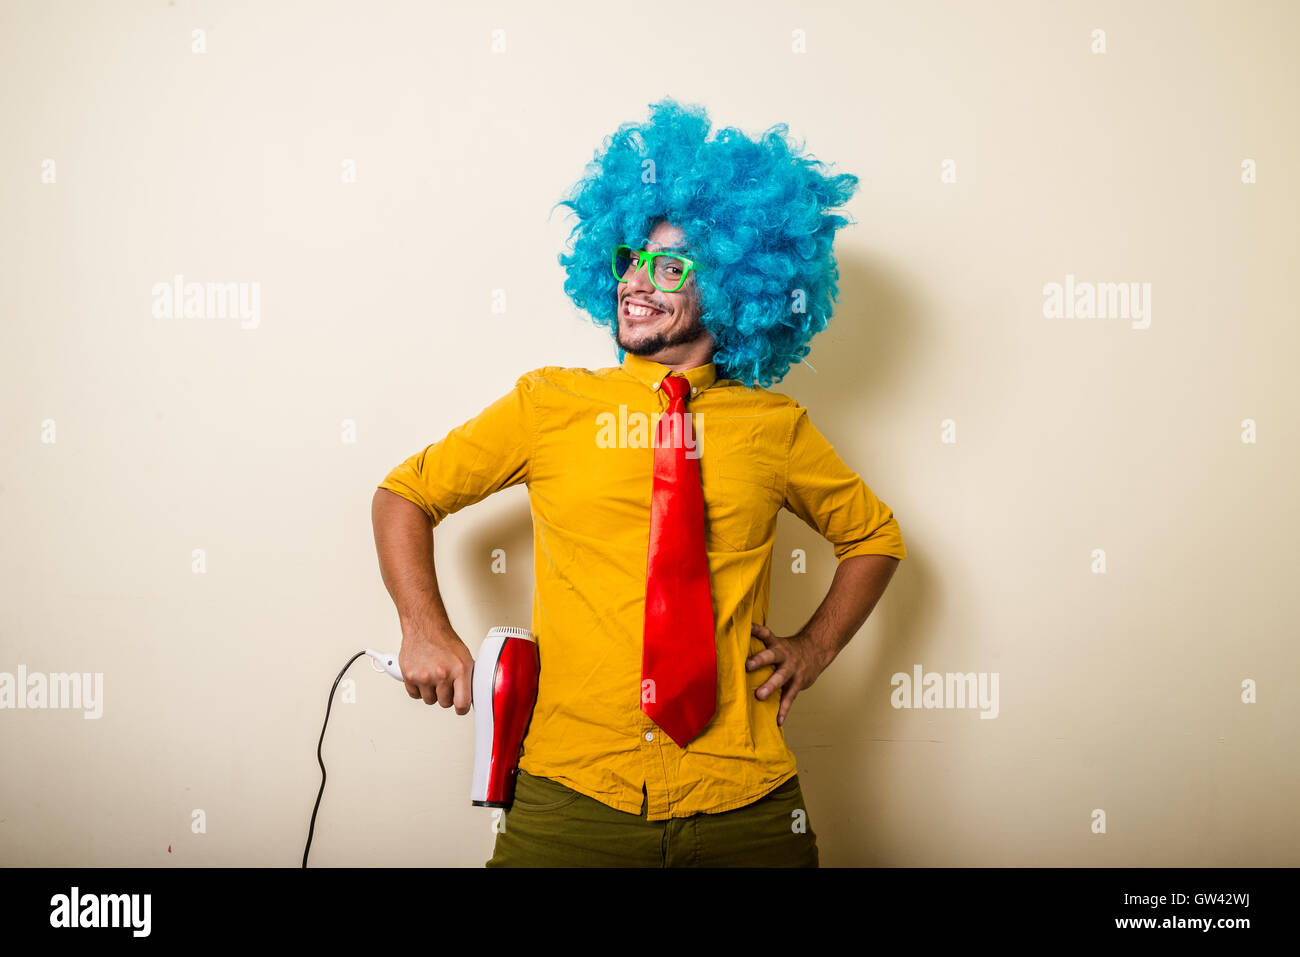 Crazy funny giovane uomo Con parrucca blu Foto Stock